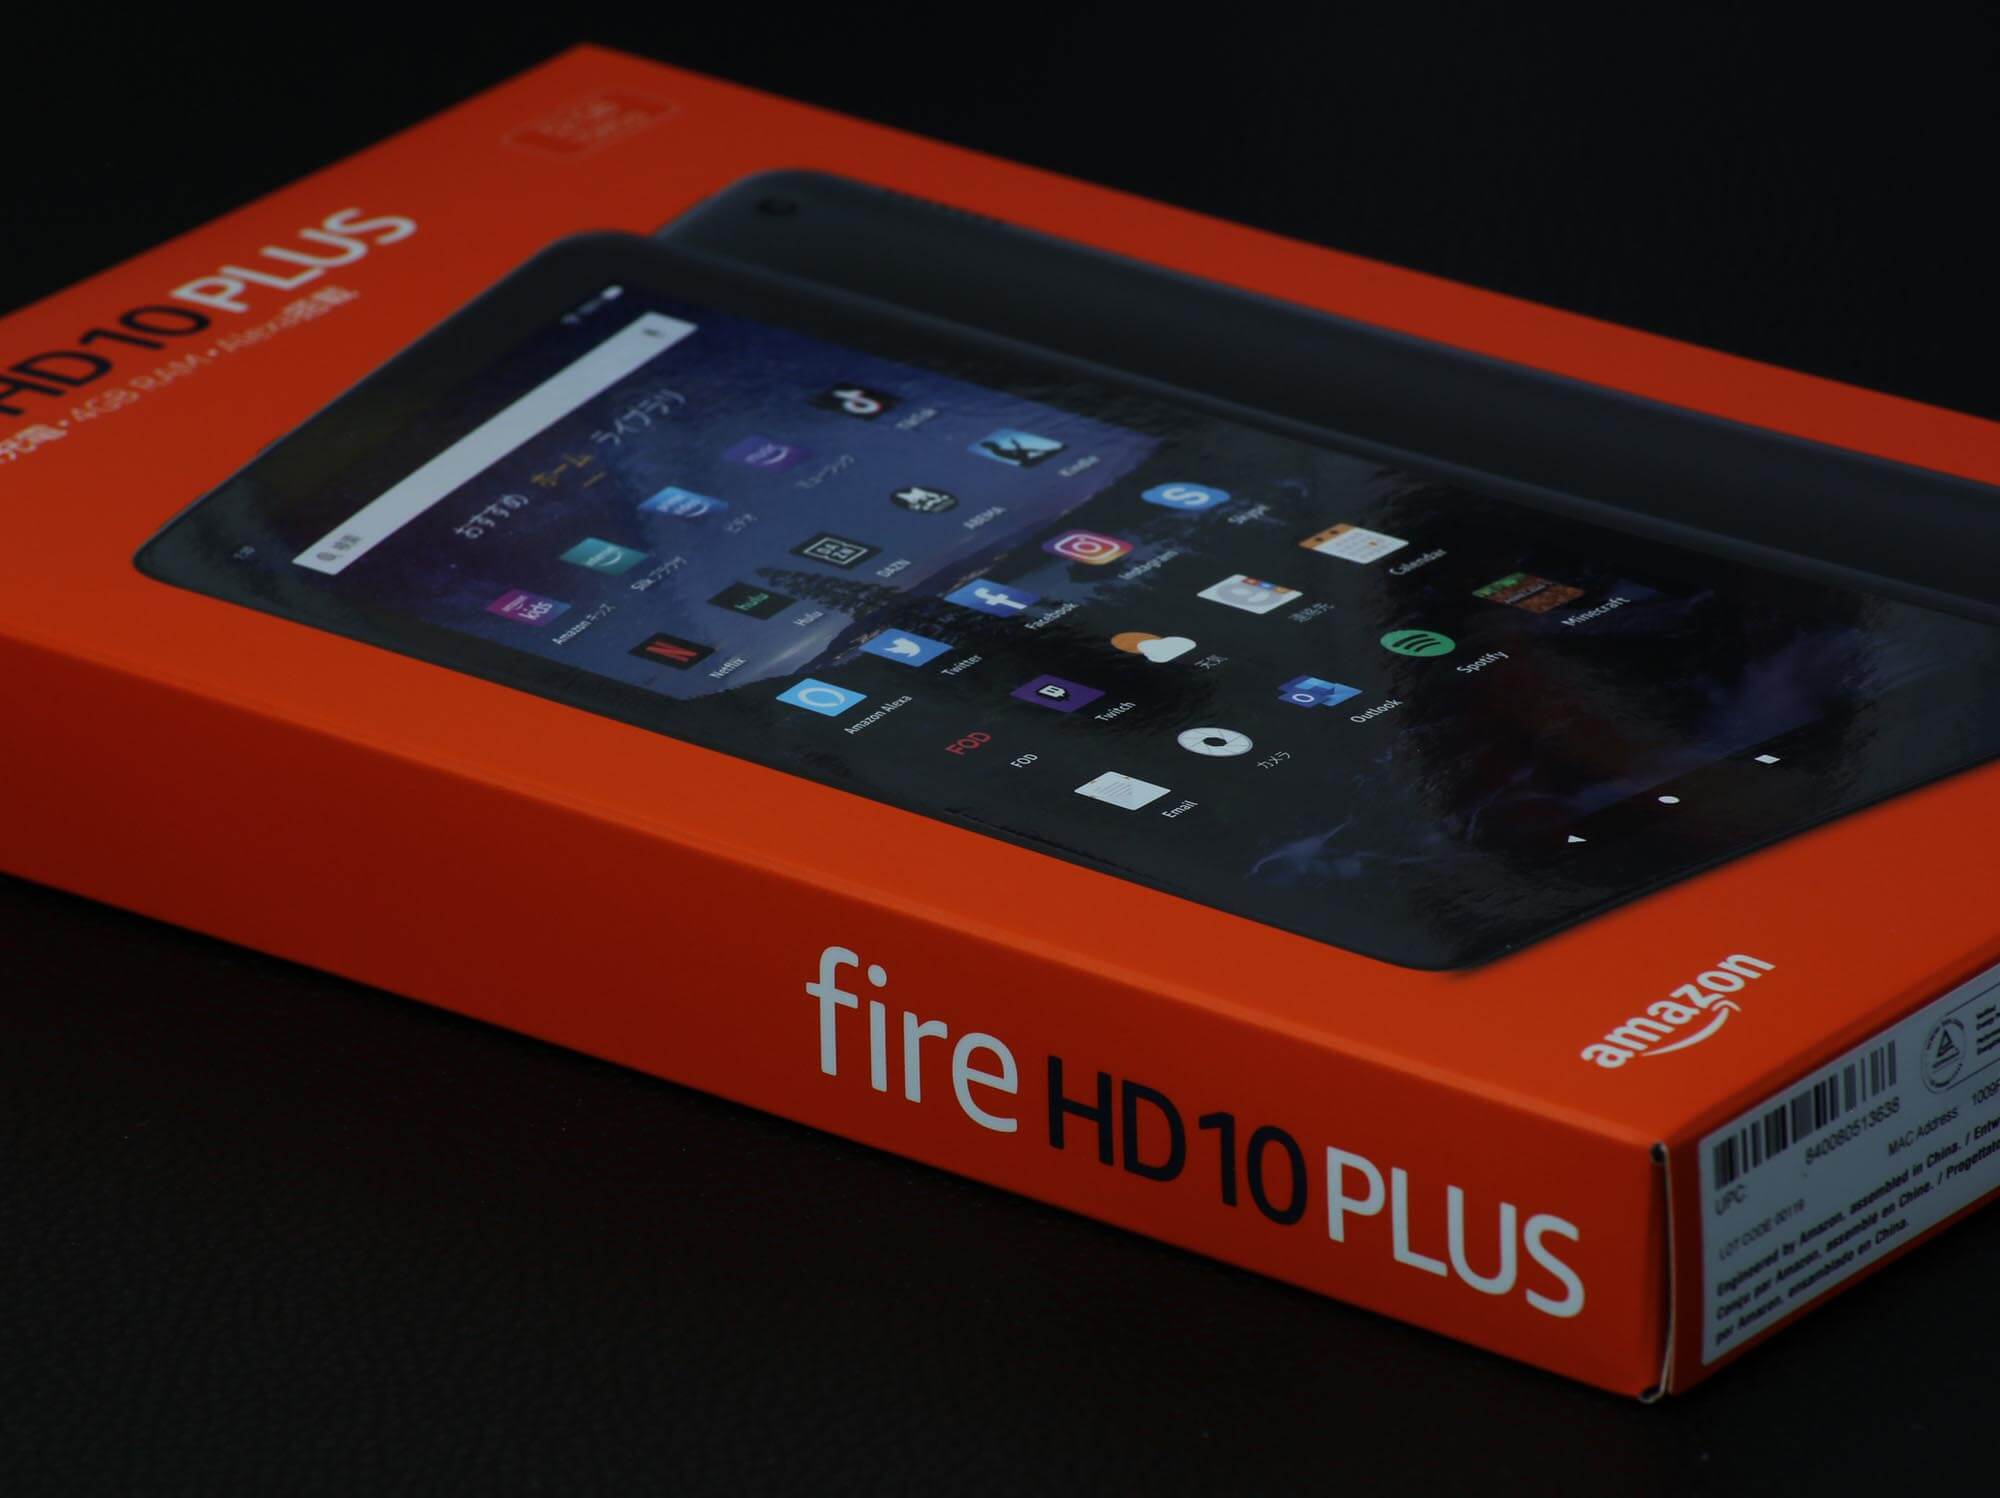 Fire HD 10 Plusのパッケージ